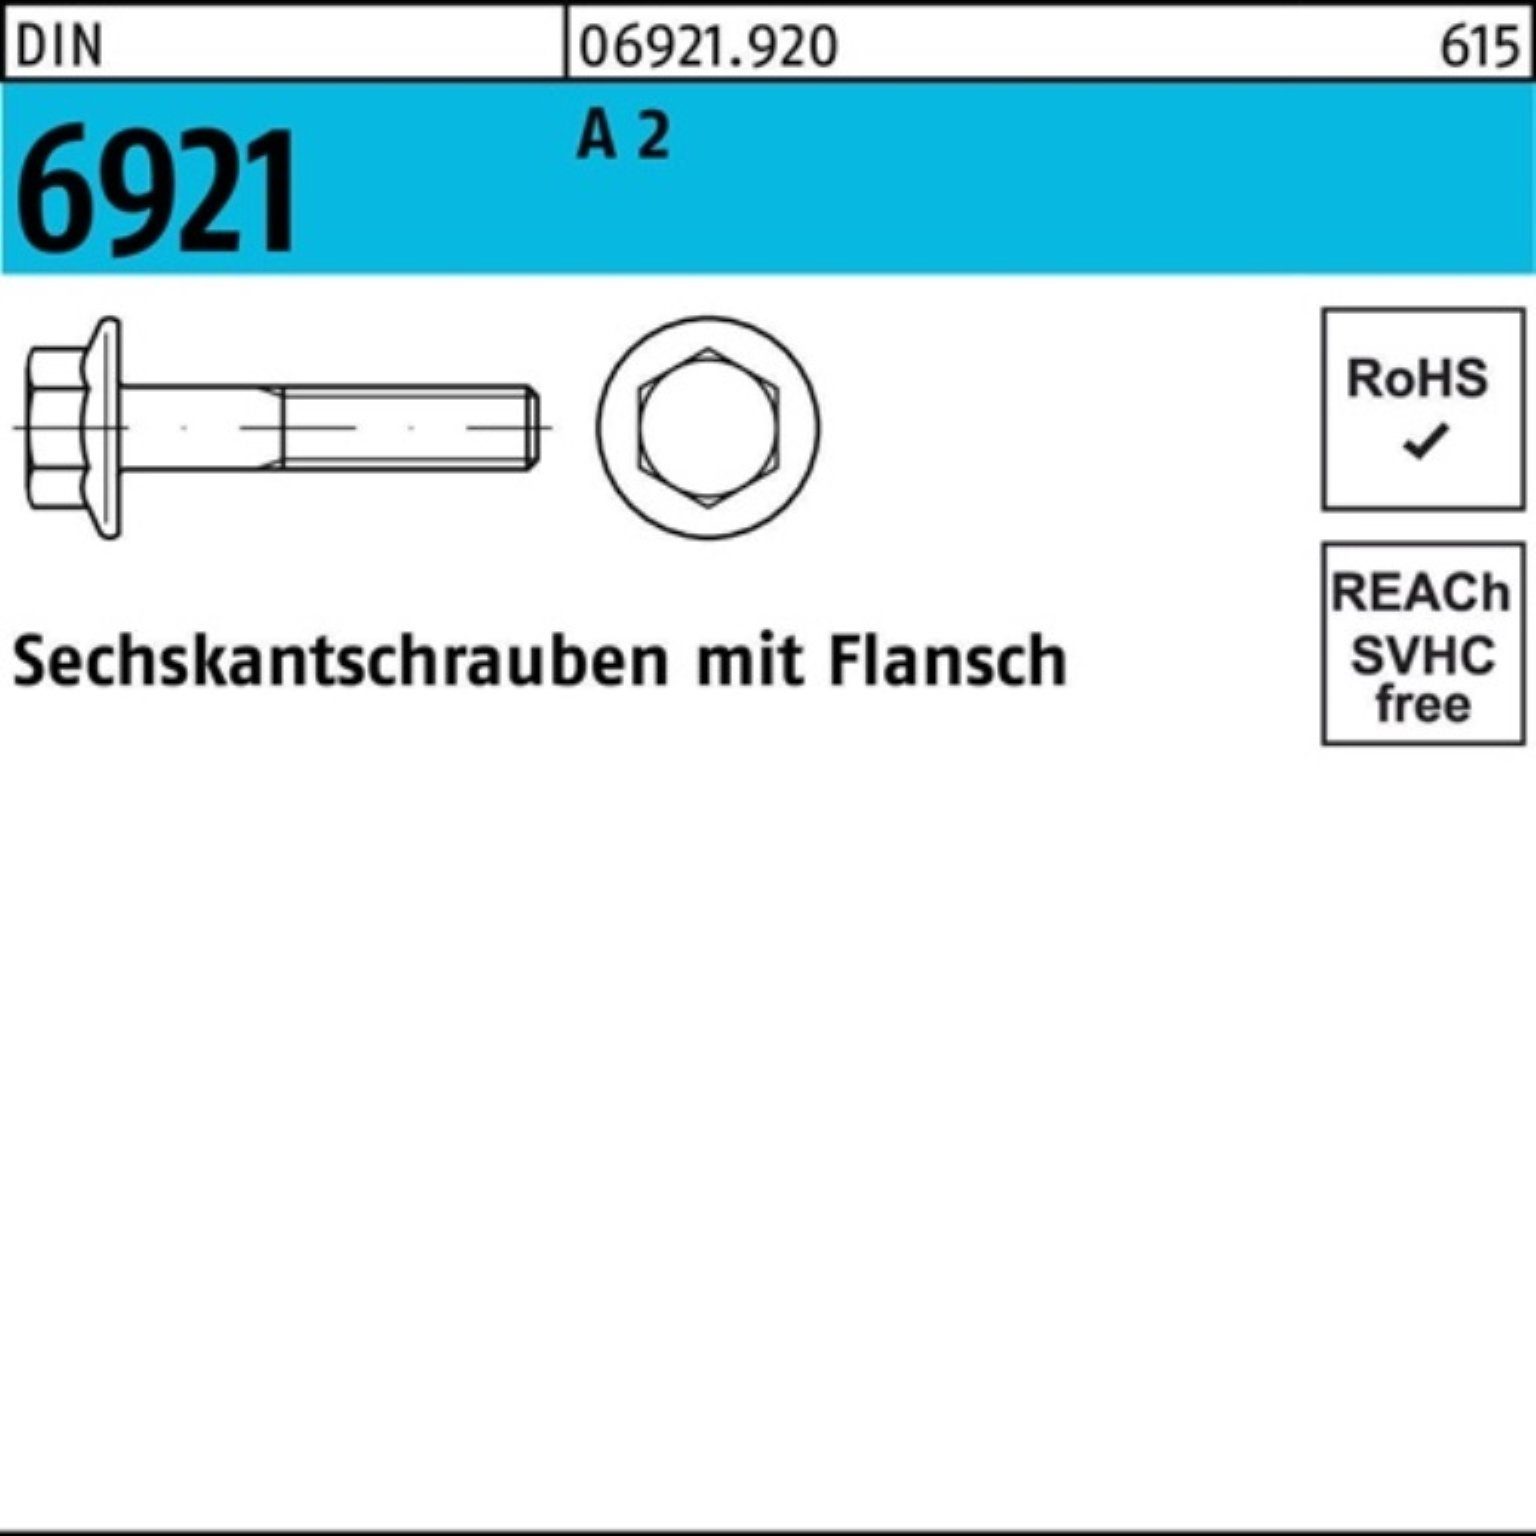 200 12 2 DI Reyher Pack A 200er M6x DIN Sechskantschraube Flansch Sechskantschraube Stück 6921